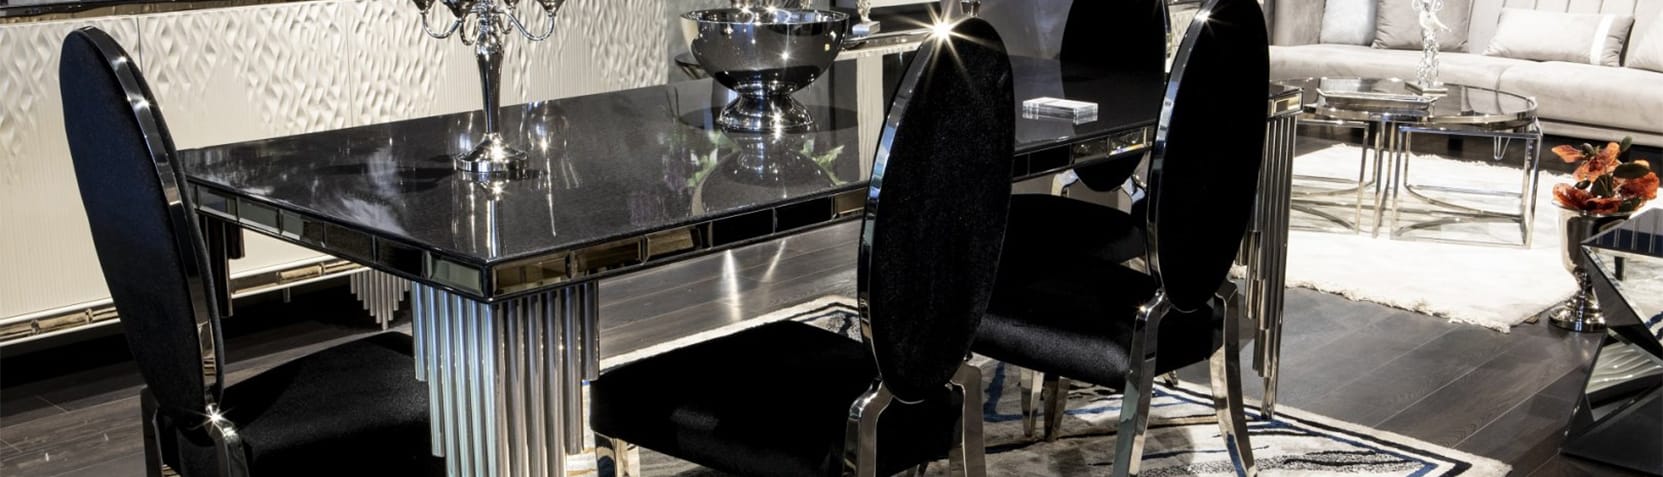 Yemek Odası | Elano Luxury Furniture - Masko - Modoko